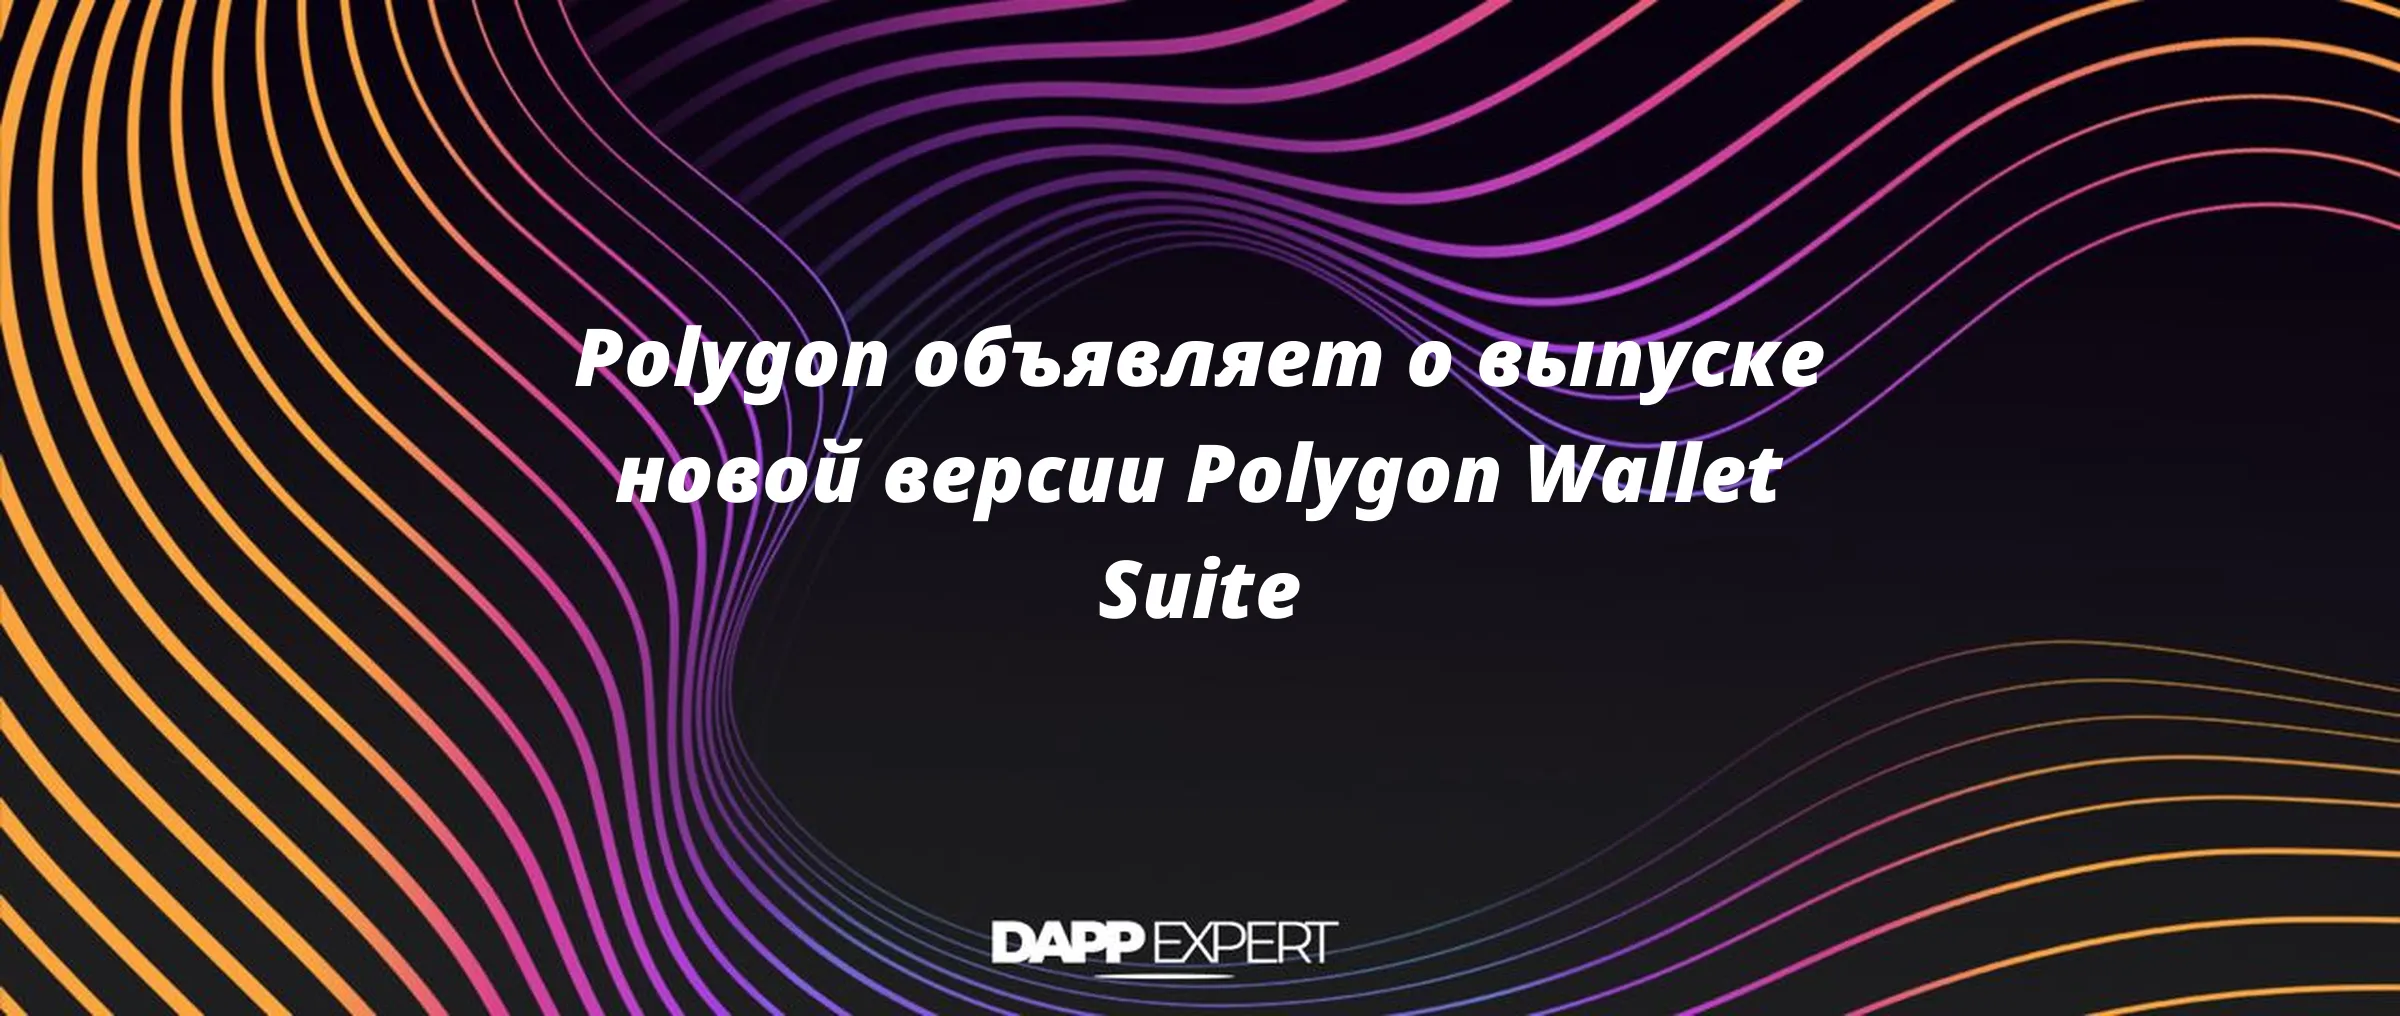 Polygon объявляет о выпуске новой версии Polygon Wallet Suite